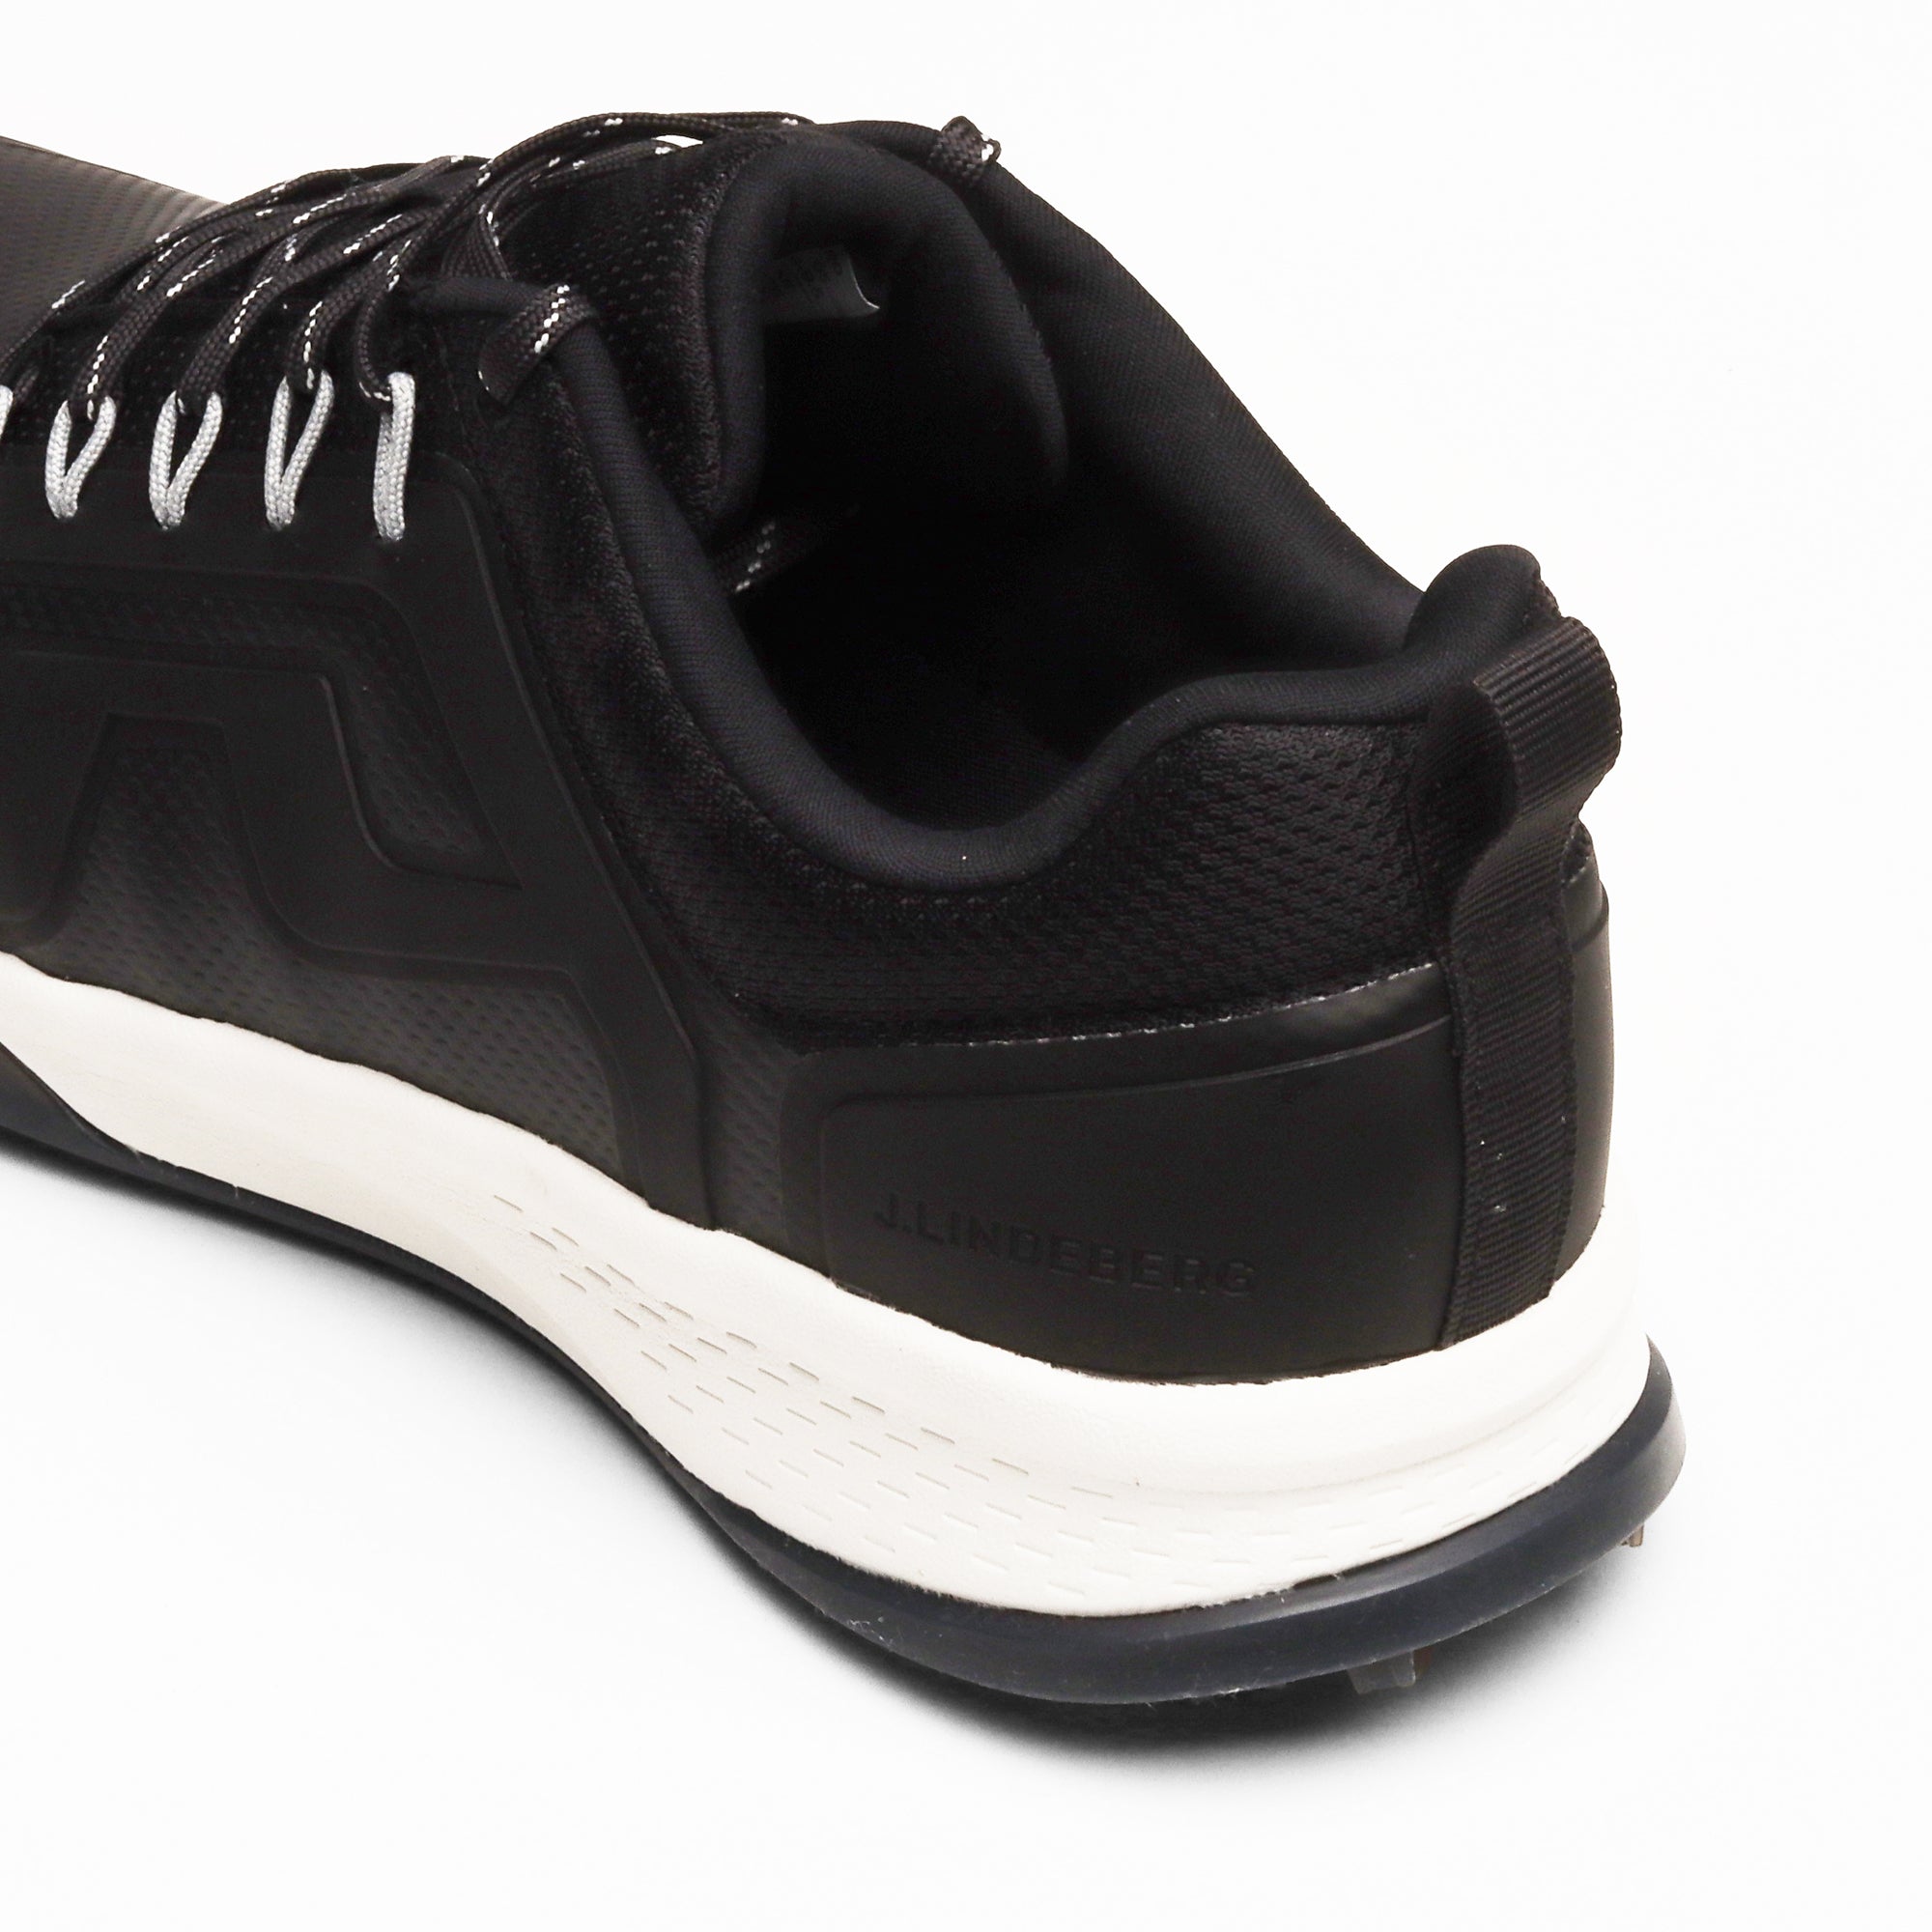 J.Lindeberg Range Finder Golf Shoes Black 3